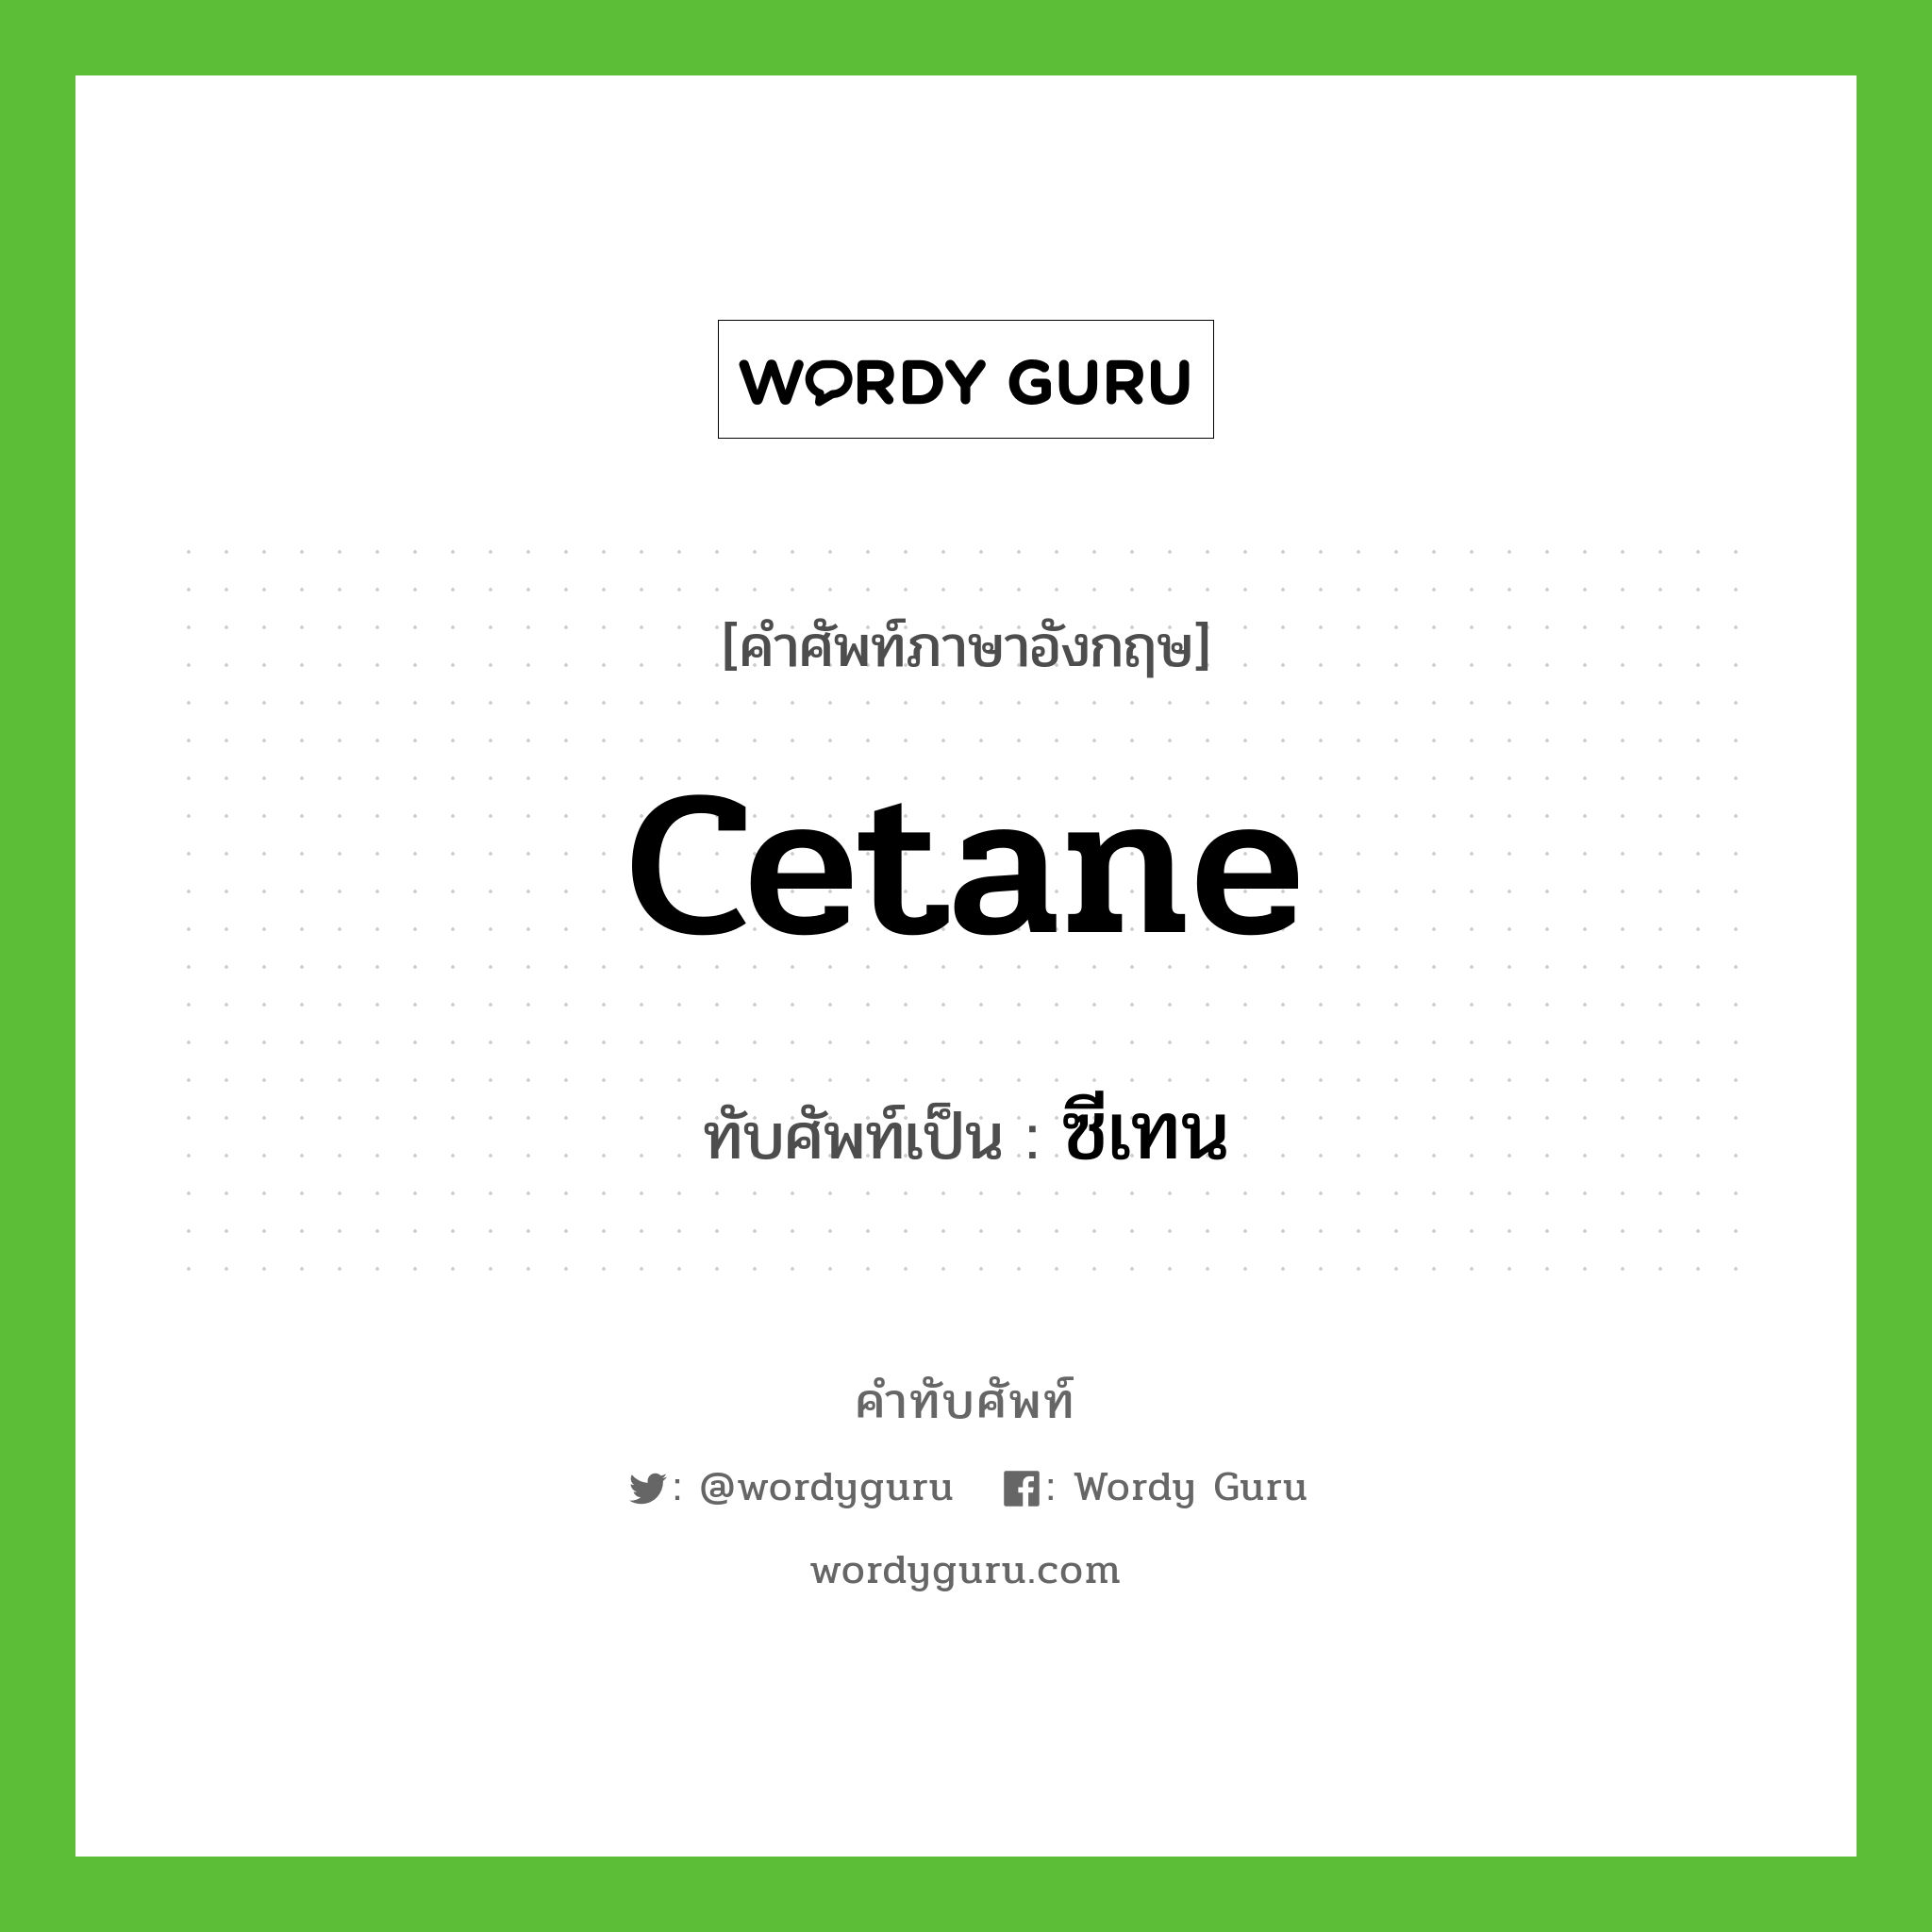 cetane เขียนเป็นคำไทยว่าอะไร?, คำศัพท์ภาษาอังกฤษ cetane ทับศัพท์เป็น ซีเทน